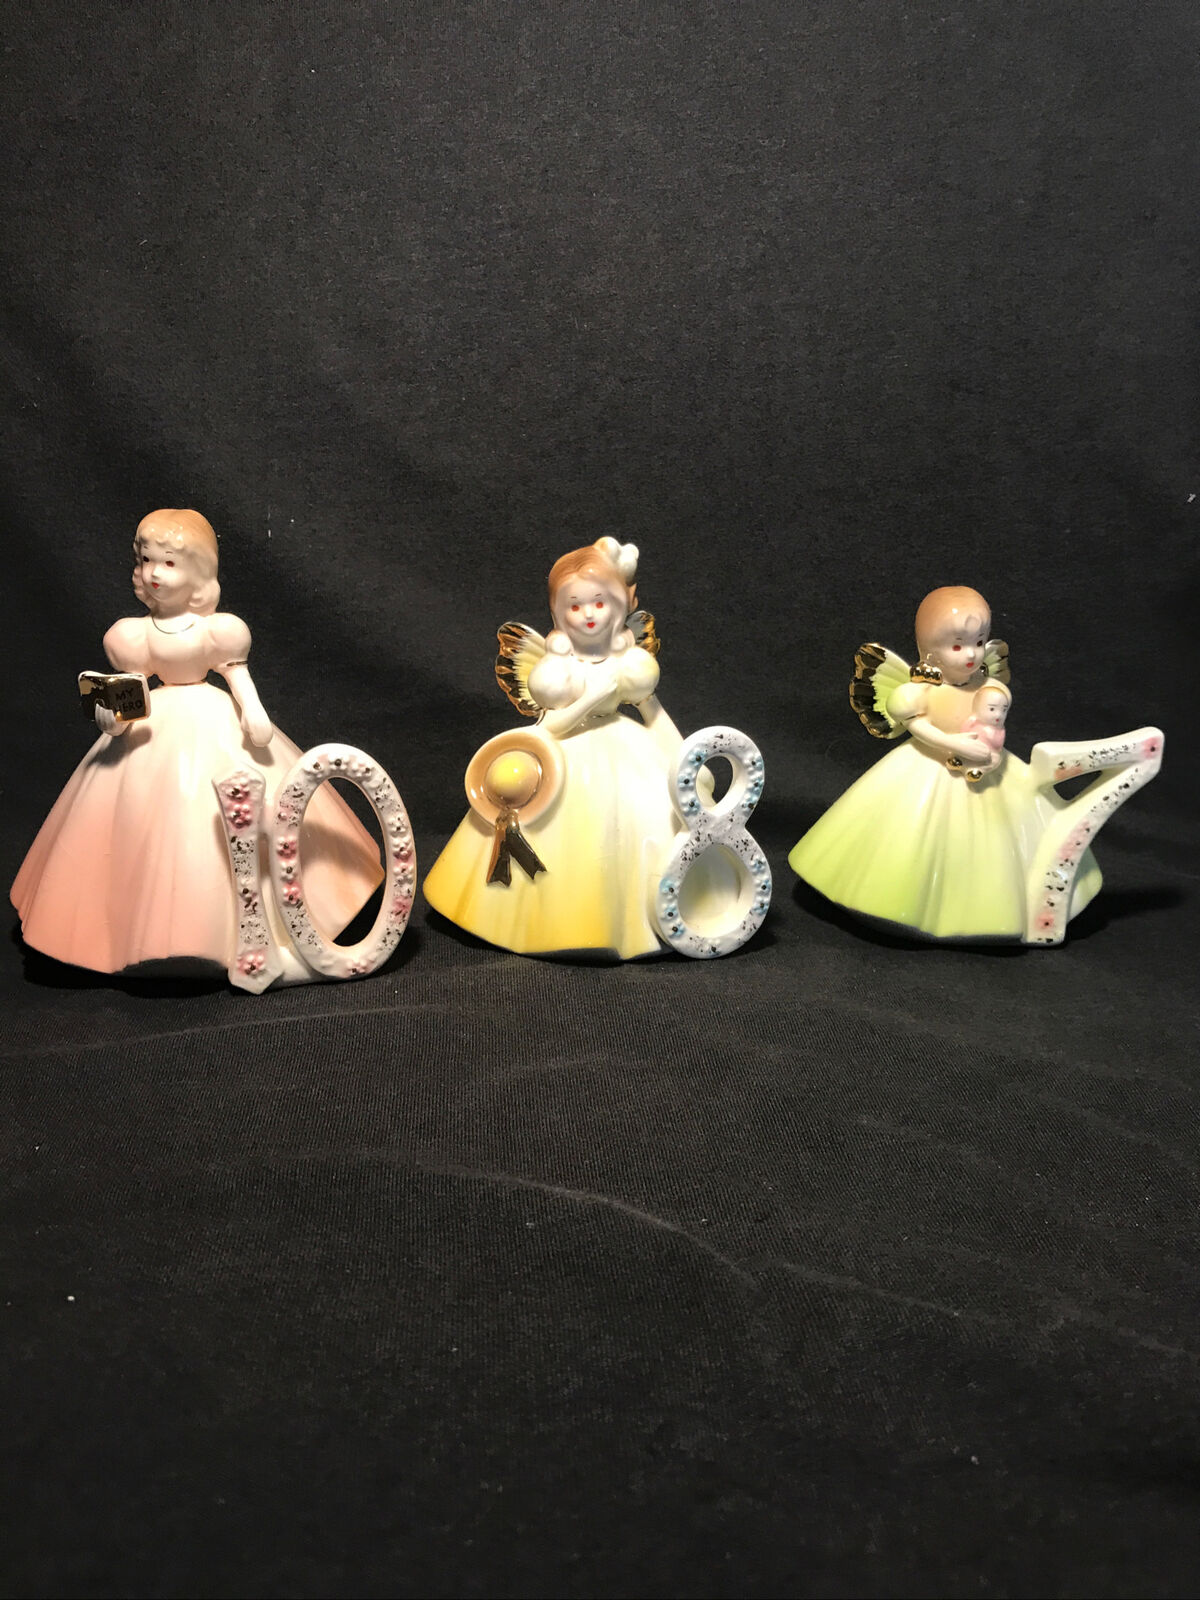 joseph originals figurines angel bithday girls